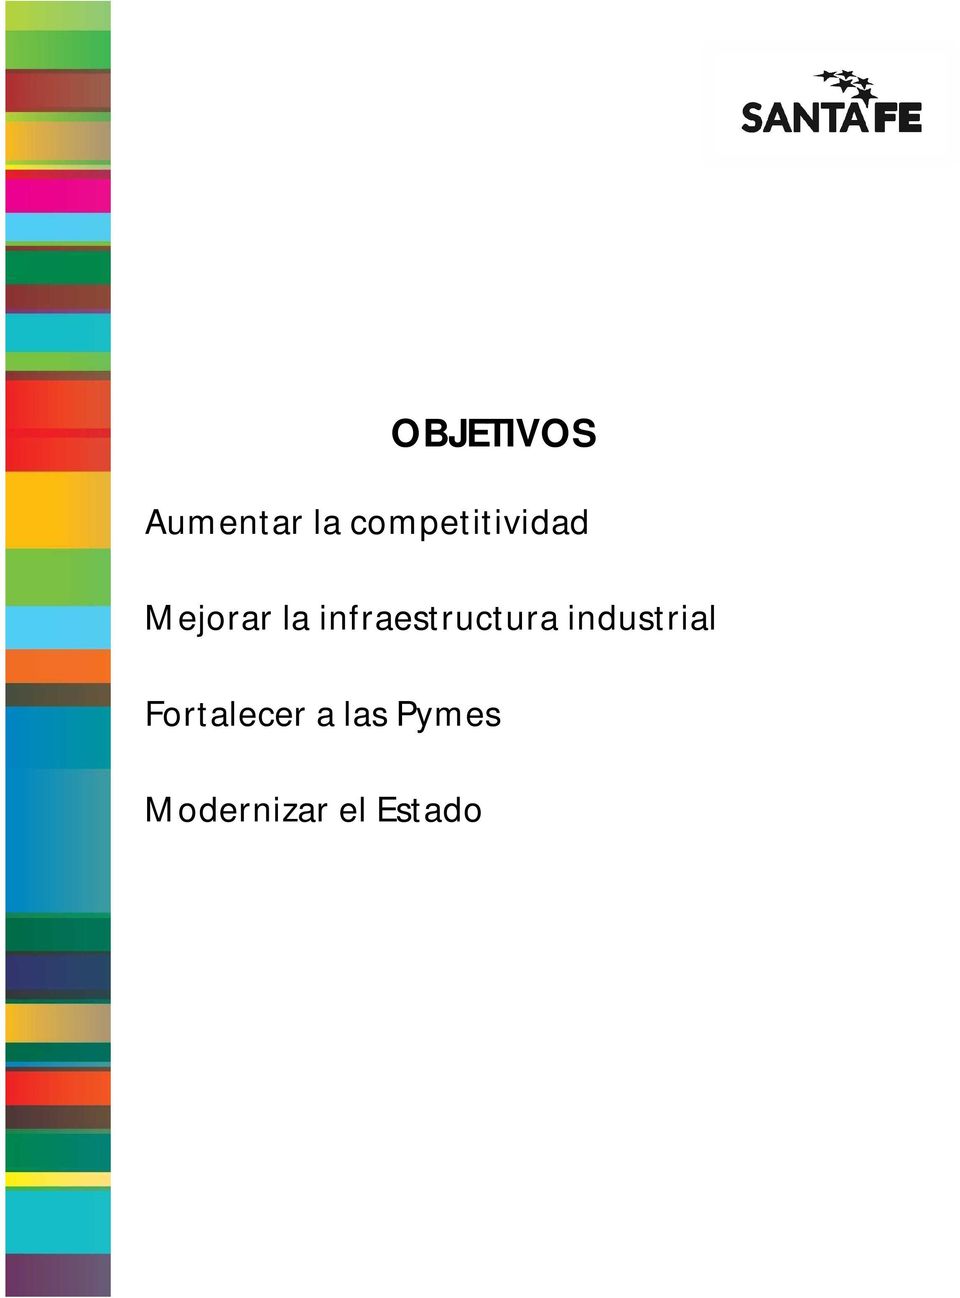 infraestructura industrial